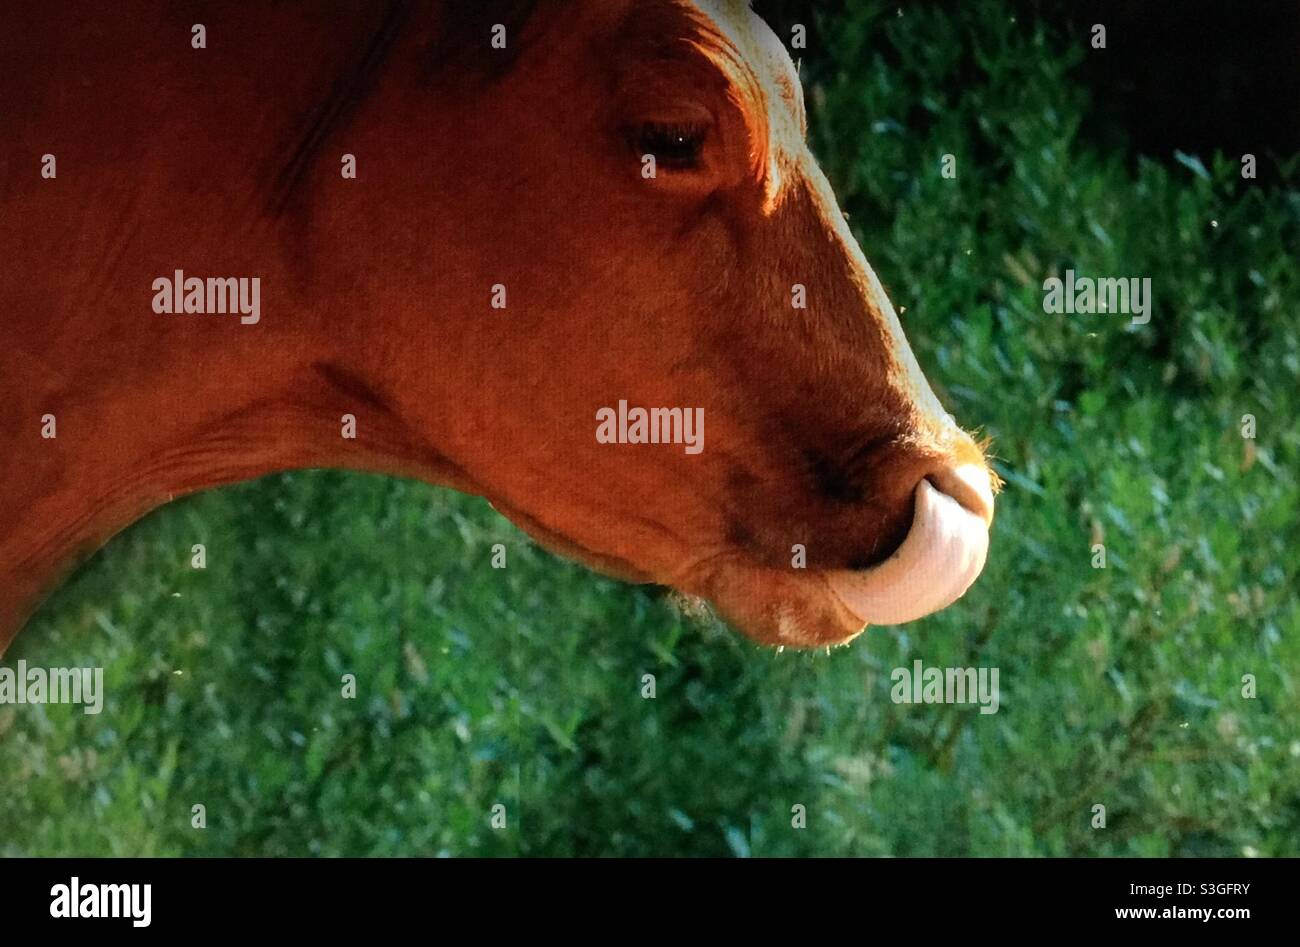 Vaca angus roja, limpiando su fosa nasal con su lengua, Ganado, ganado, bovino Foto de stock